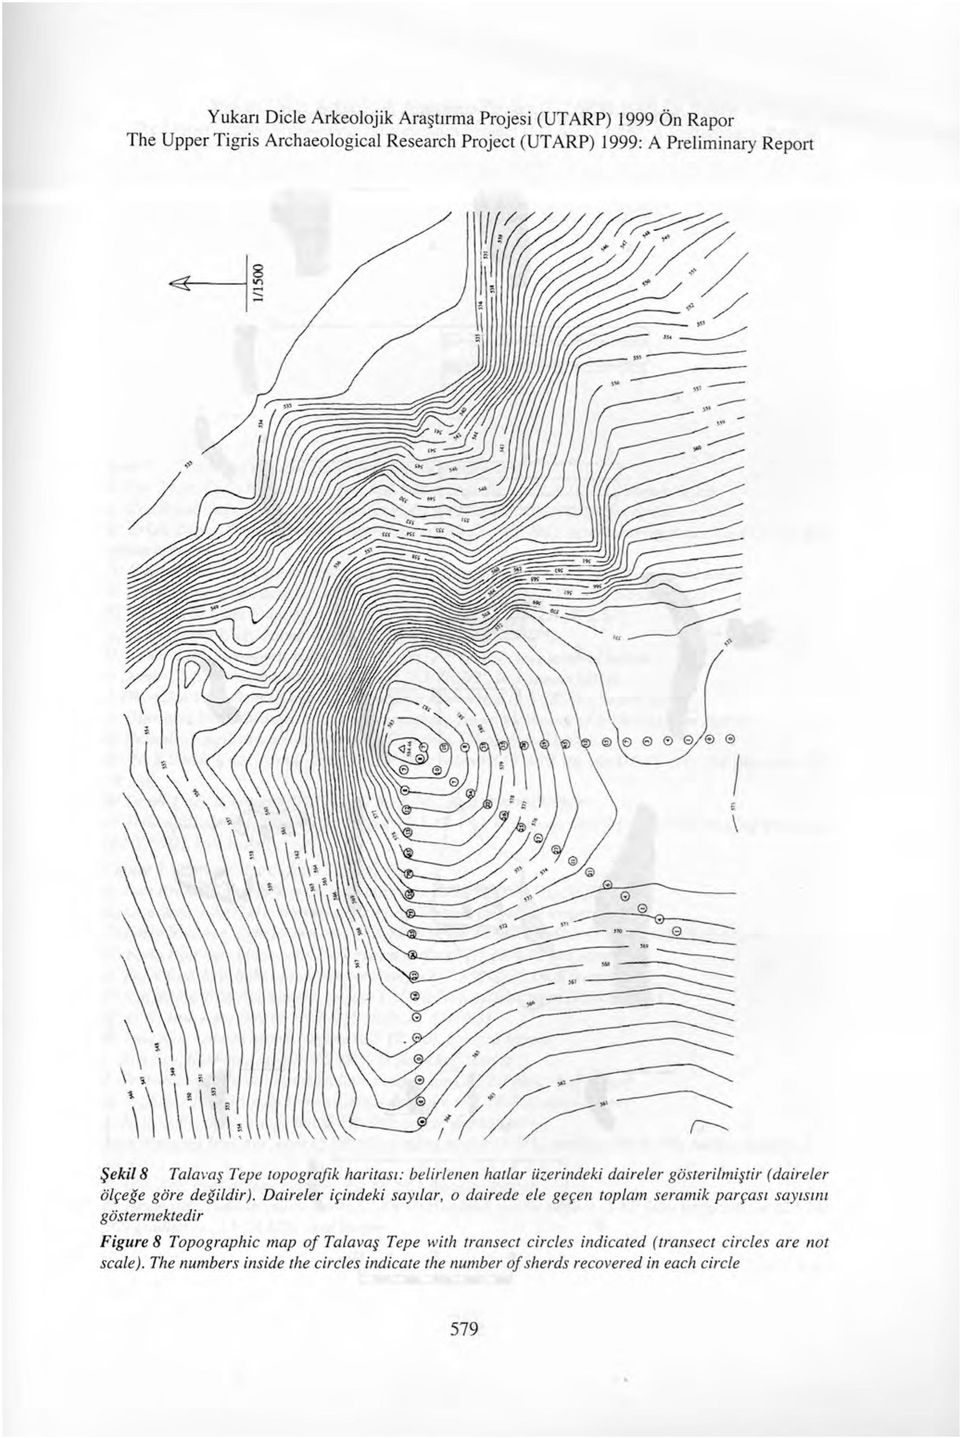 Daireler igindeki saydar, o dairede ele gegen toplam seramik pargasi sayisini gostermektedir Figure 8 Topographic map of Talavas Tepe with